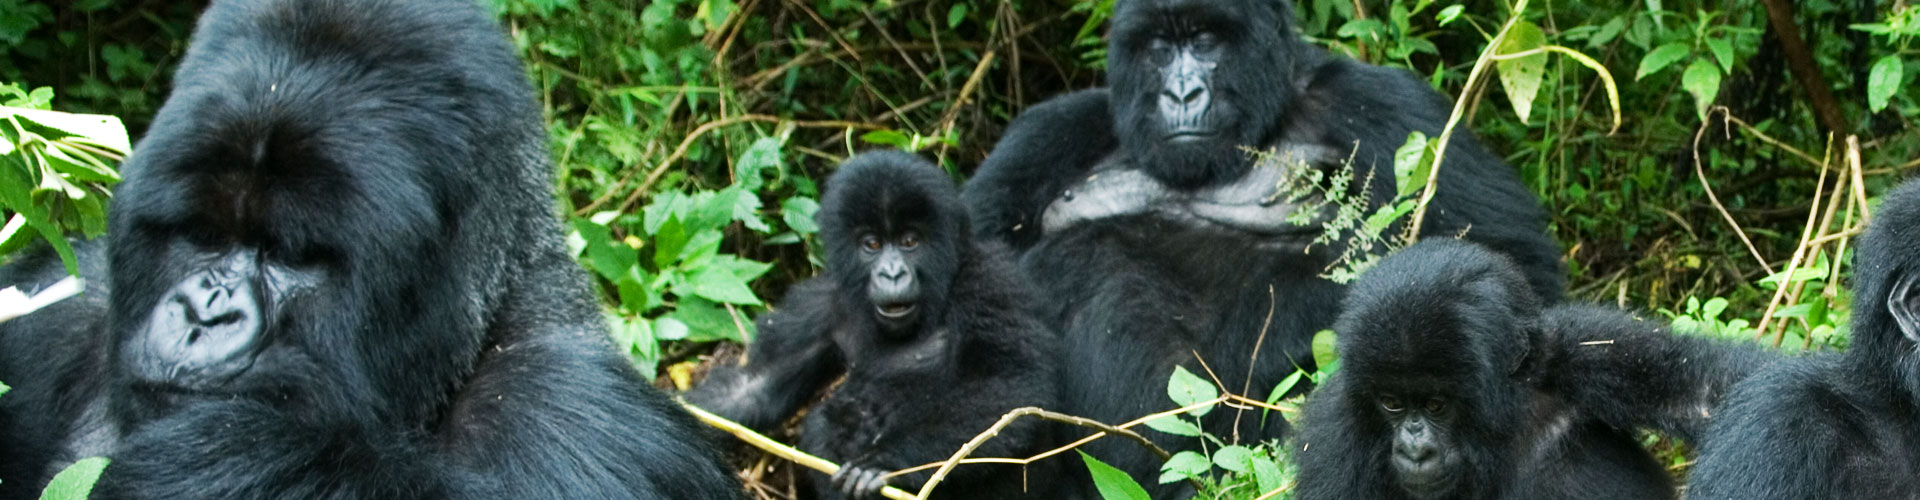 Rwanda safaris luxury safari holidays